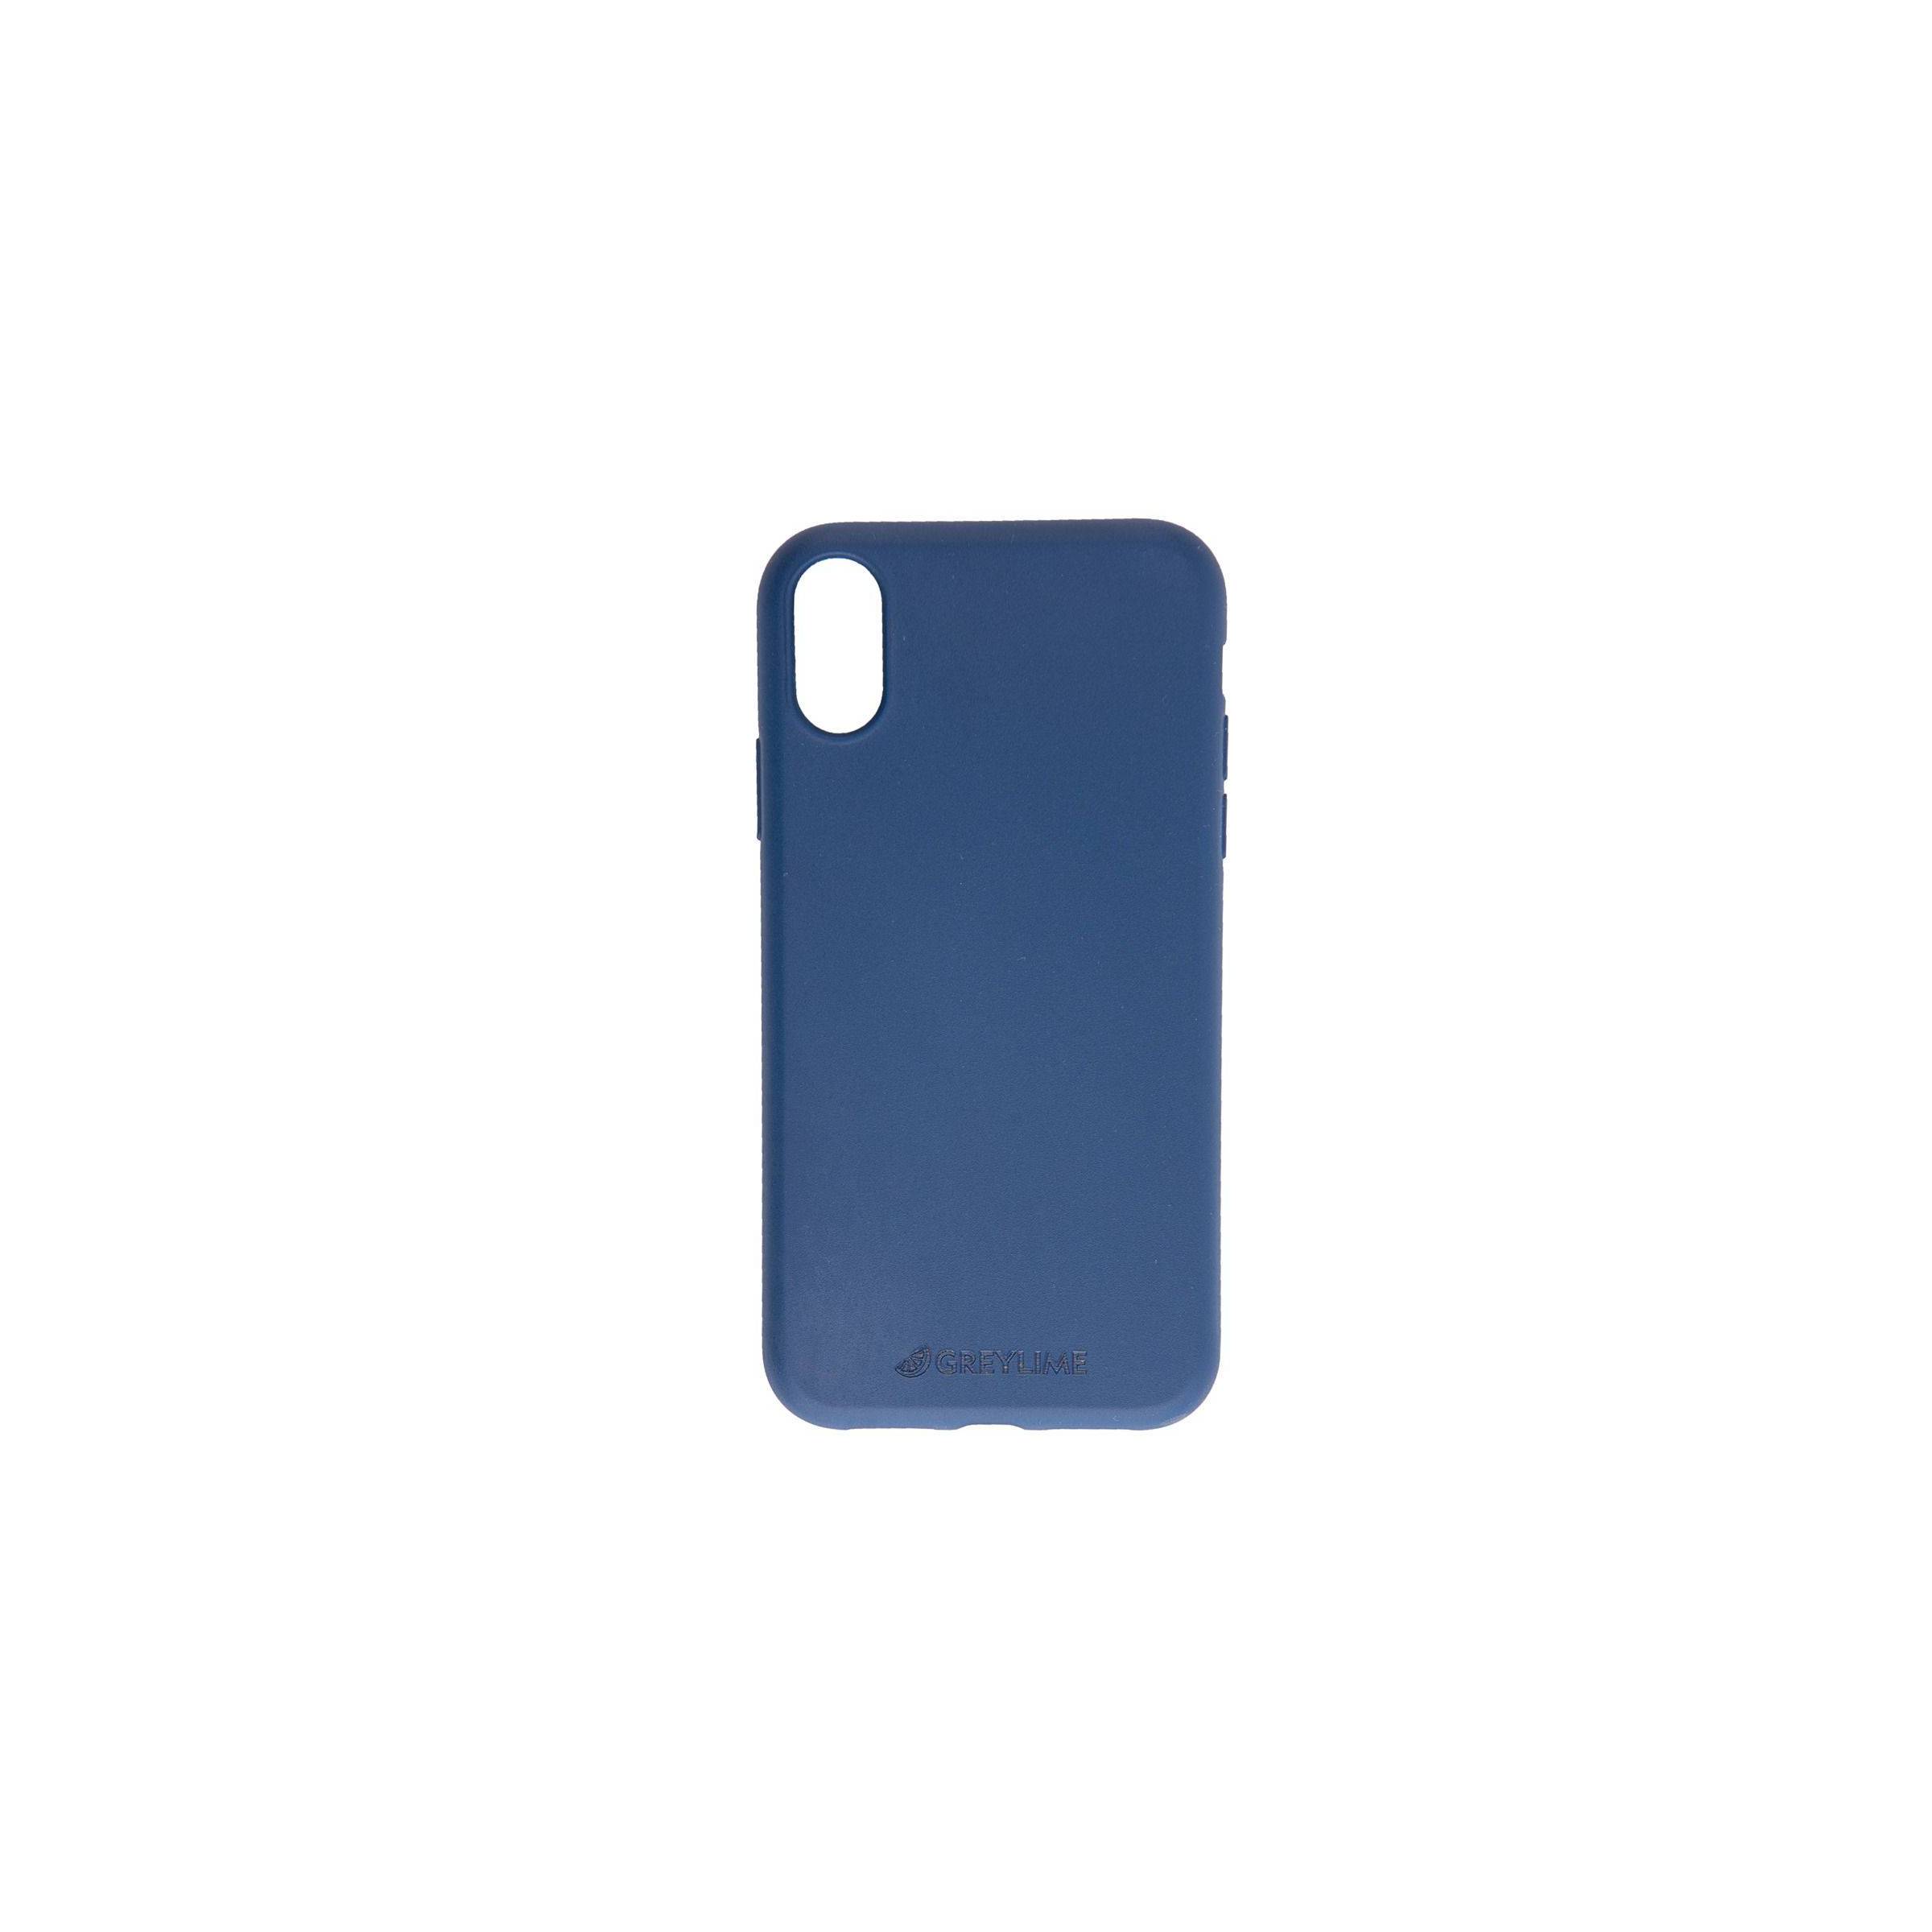 Bilde av Iphone X/xs Biodegradable Cover Greylime, Farge Mørke Blå